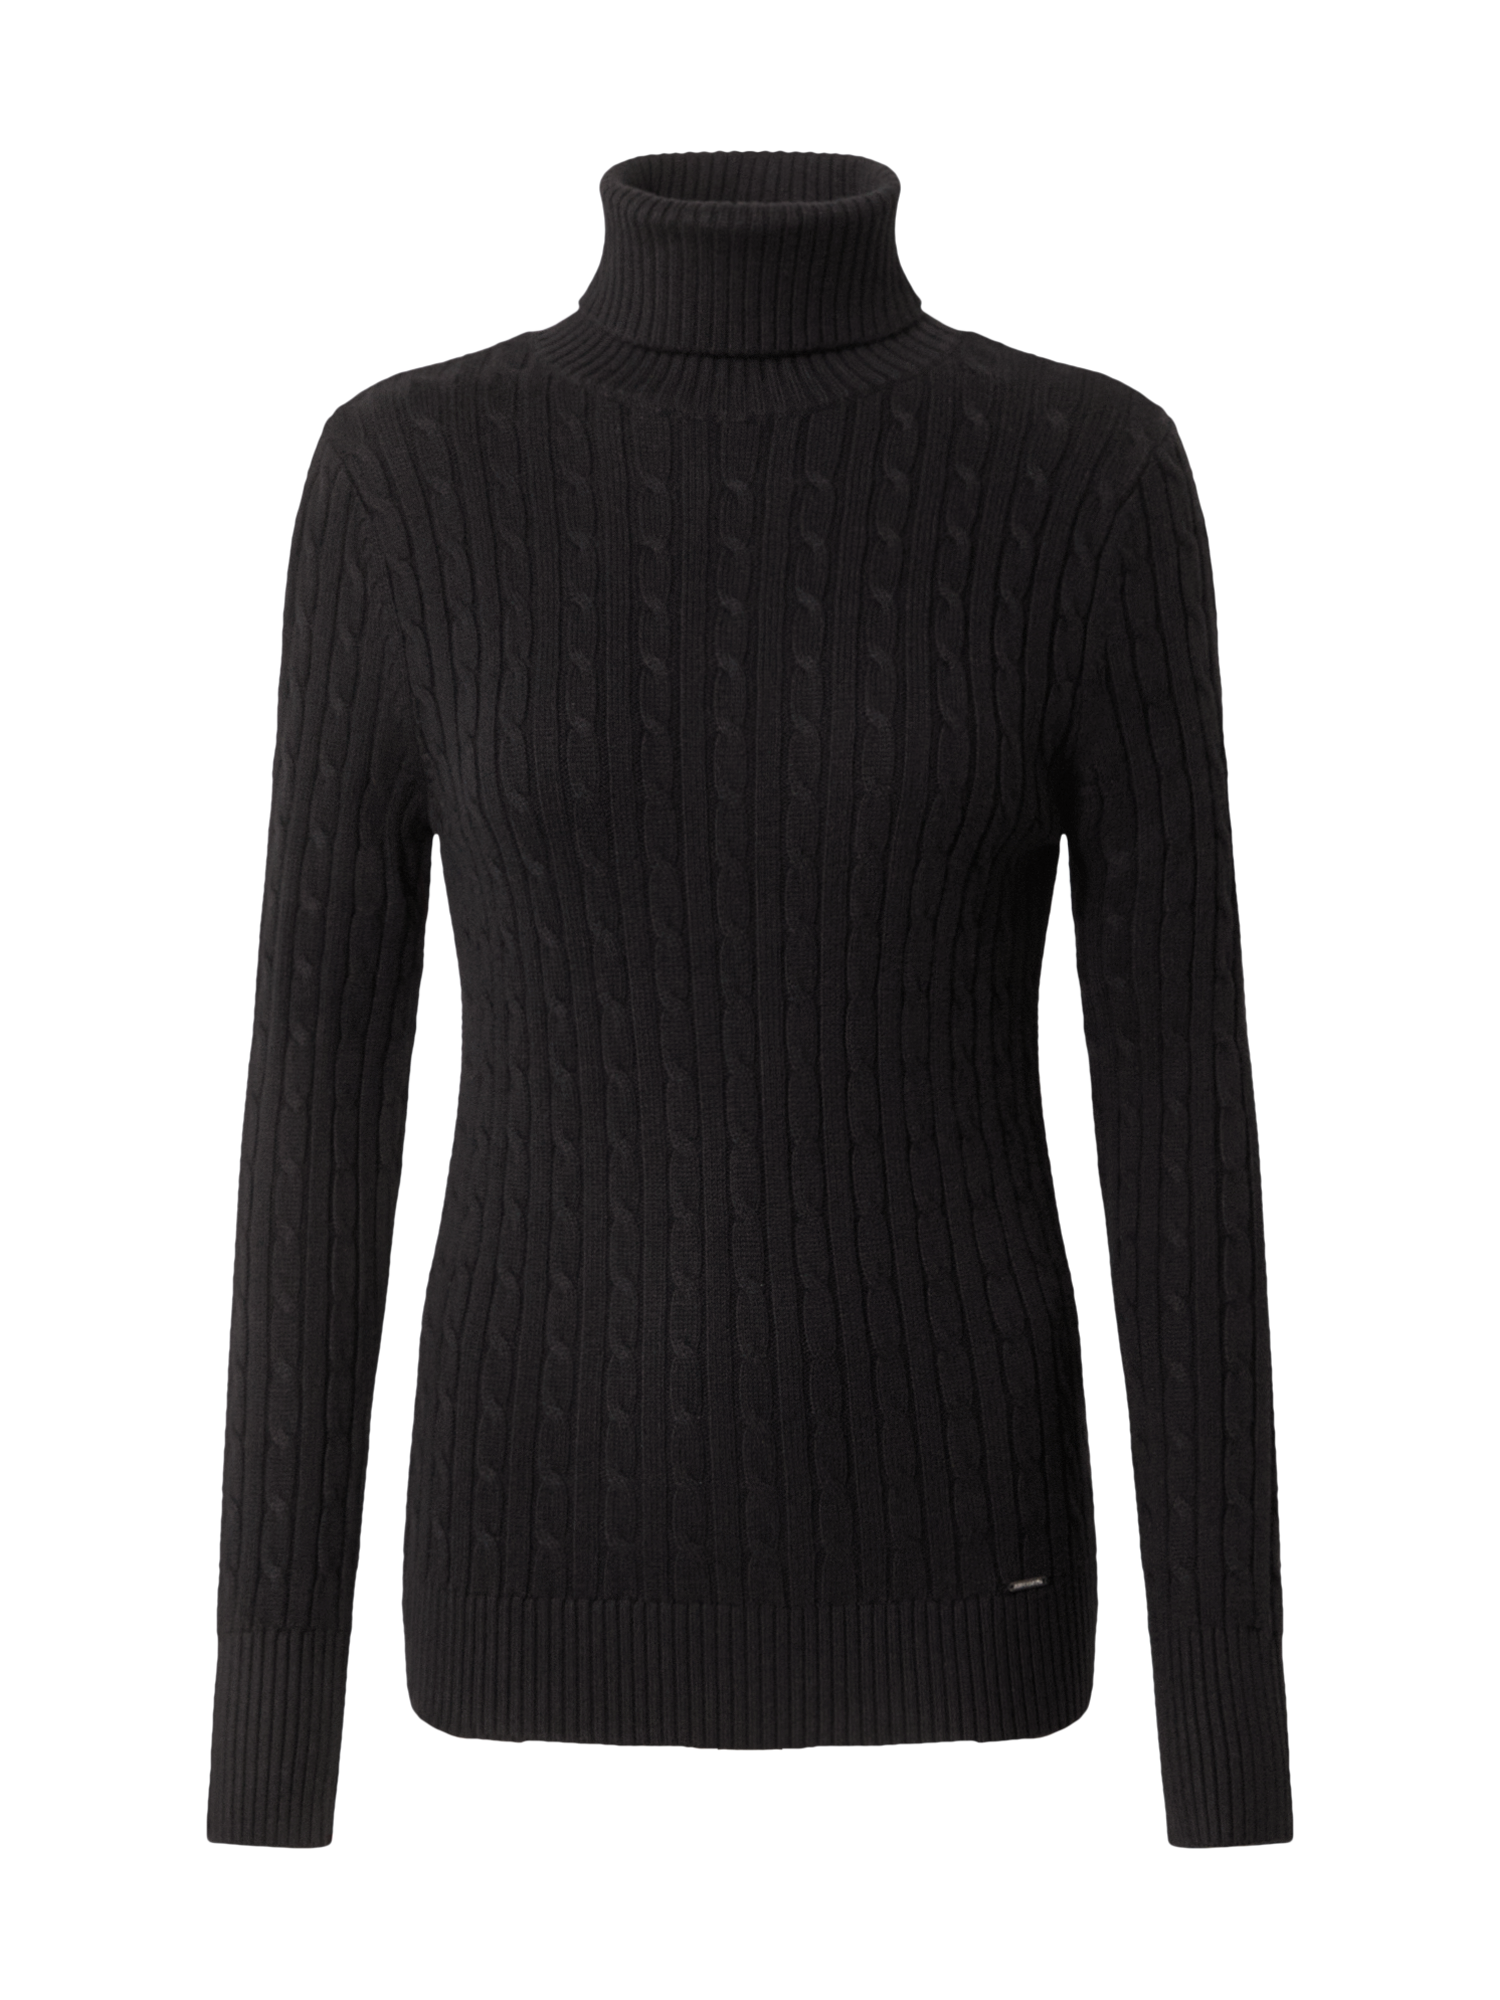 Odzież Kobiety Superdry Sweter Croyde Cable w kolorze Czarnym 